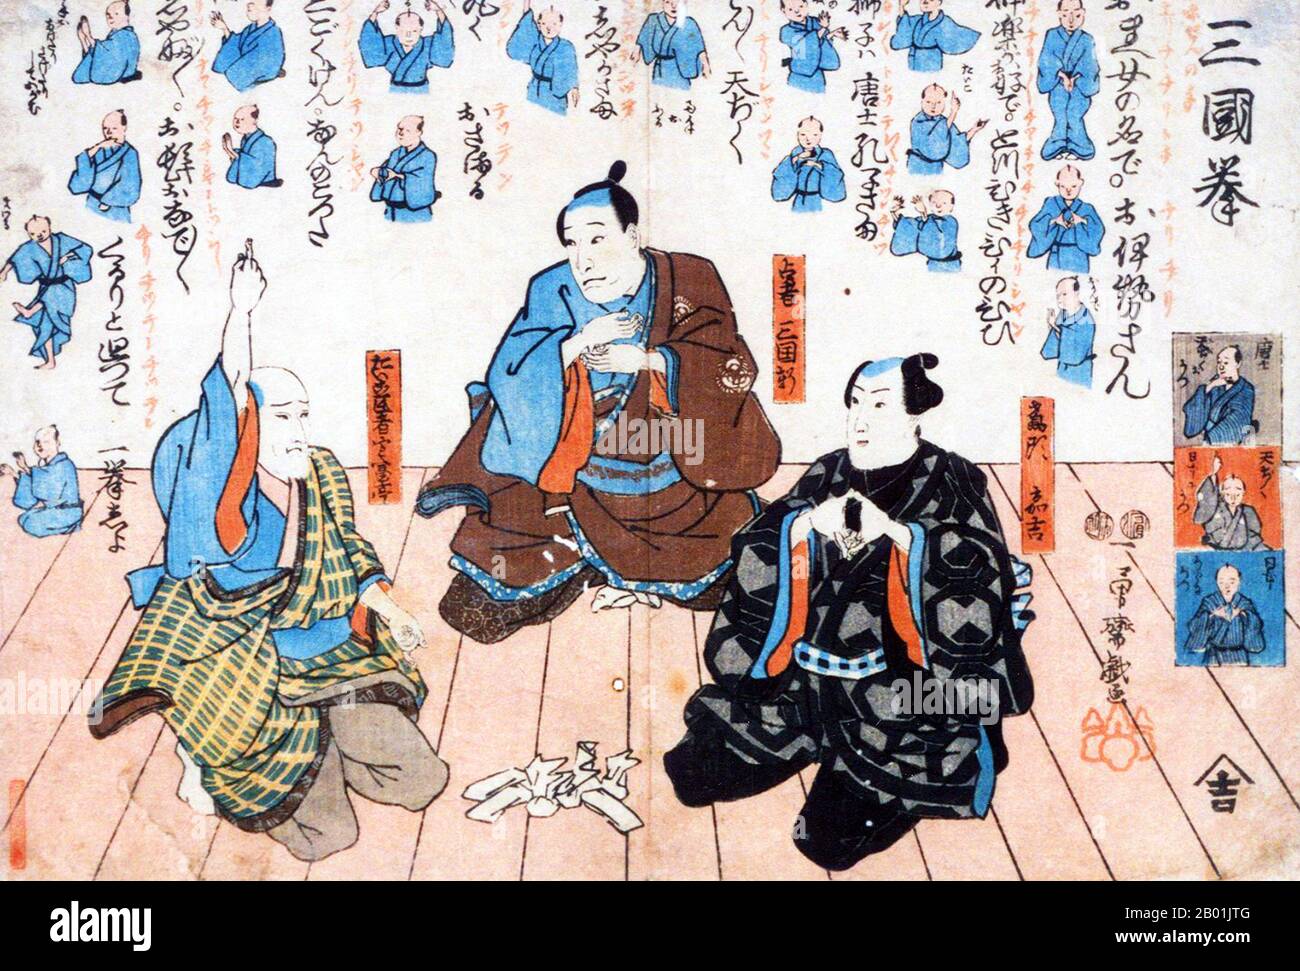 Giappone: Gli attori Nakamura Utaemon IV, Ichikawa Kuzô II e Matsumoto Kôshirô vi giocano il gioco Ken. Ukiyo-e Woodblock print di Utagawa Kuniyoshi (1 gennaio 1797 - 14 aprile 1862), 1849. Utagawa Kuniyoshi fu uno degli ultimi grandi maestri dello stile ukiyo-e giapponese delle stampe e della pittura in legno. È associato alla scuola di Utagawa. La gamma dei soggetti preferiti di Kuniyoshi includeva molti generi: Paesaggi, belle donne, attori Kabuki, gatti e animali mitici. È noto per le raffigurazioni delle battaglie dei samurai e degli eroi leggendari. Foto Stock